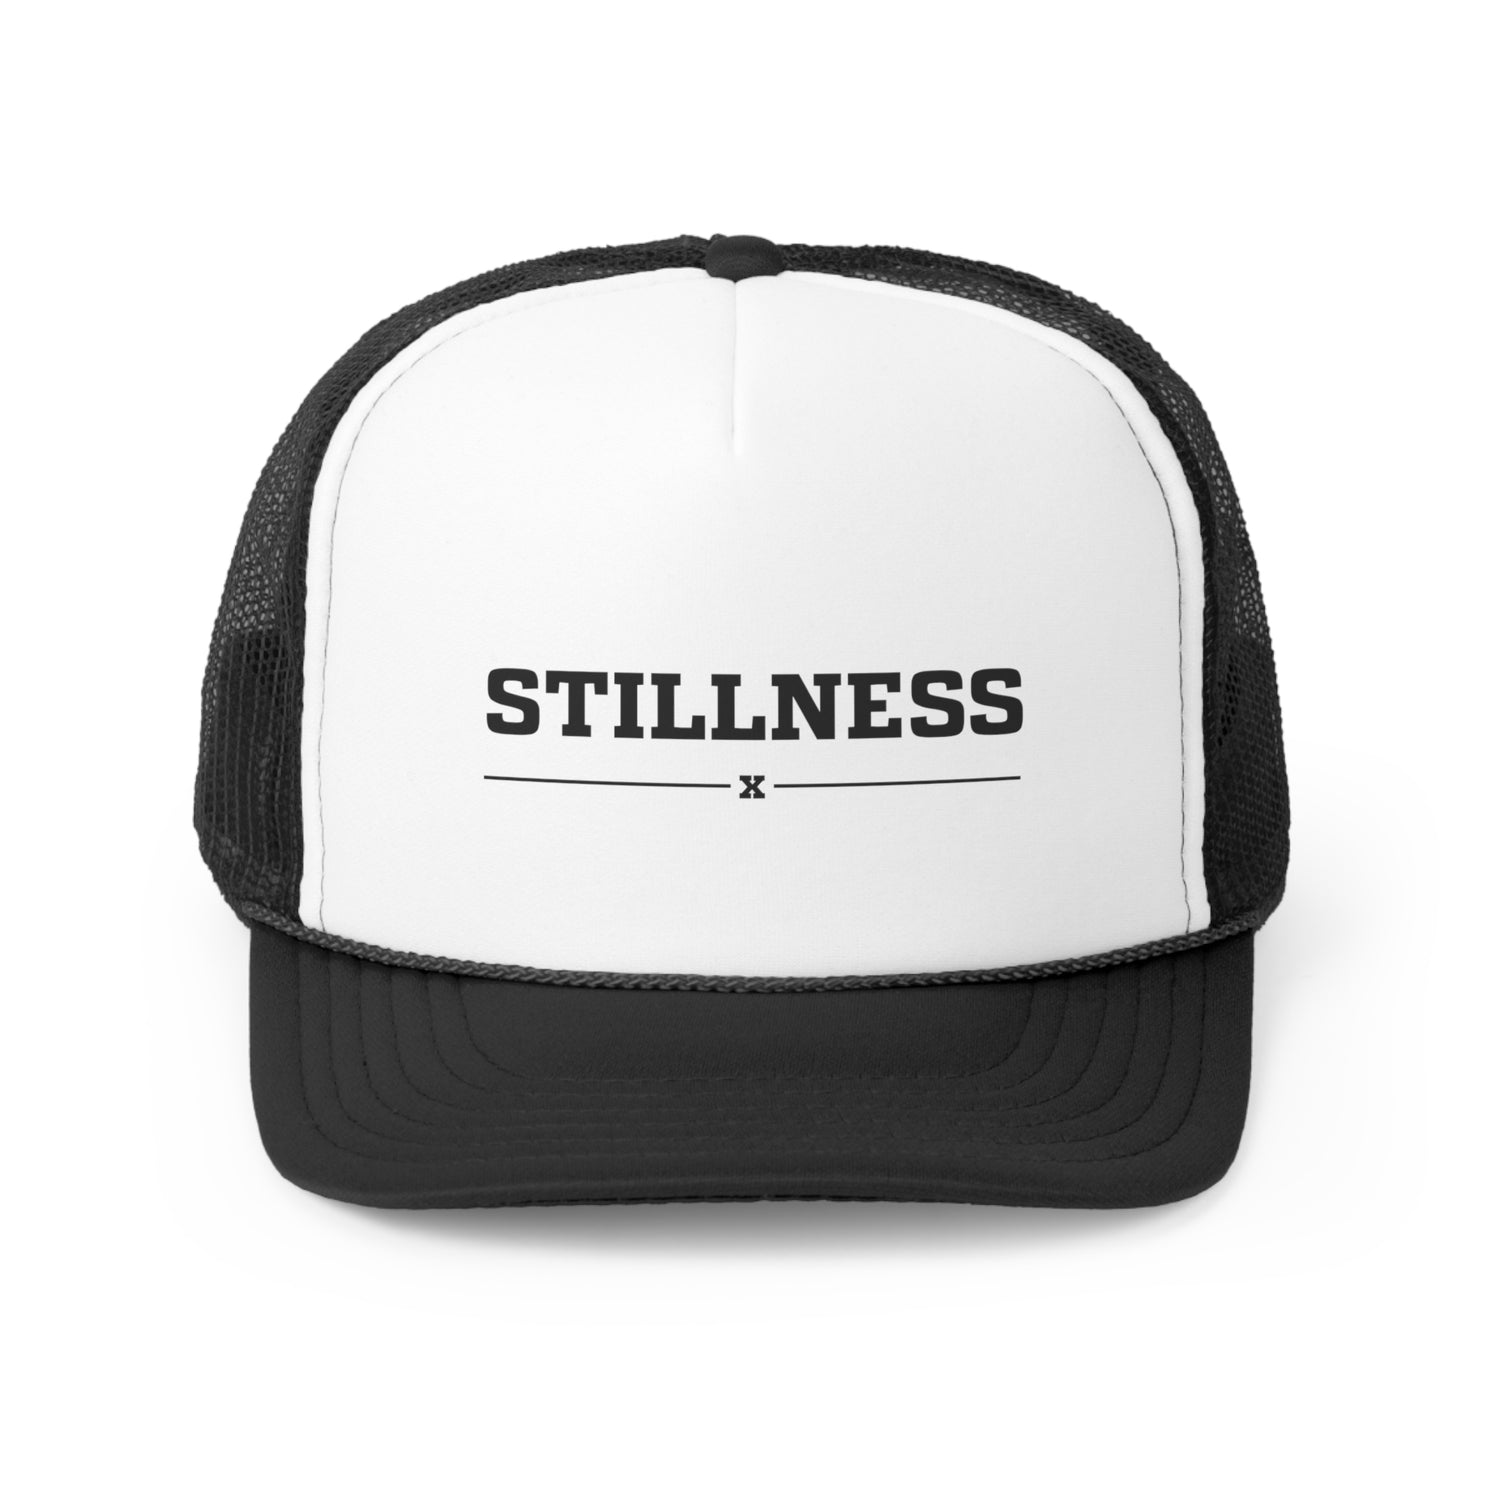 Stillness Trucker Caps